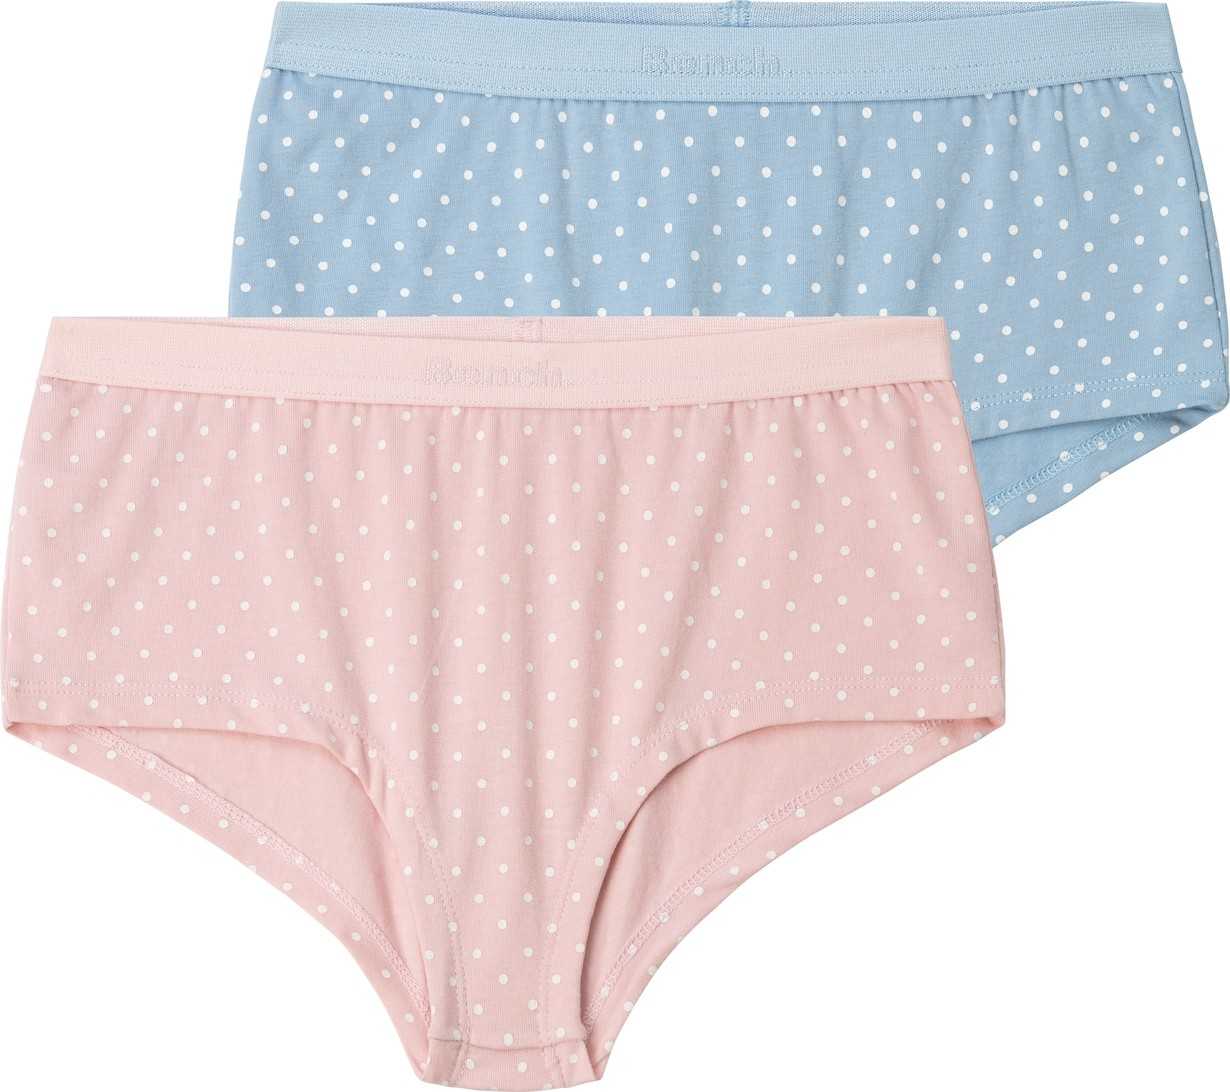 BENCH Spodní prádlo pastelová modrá / pastelově růžová / bílá